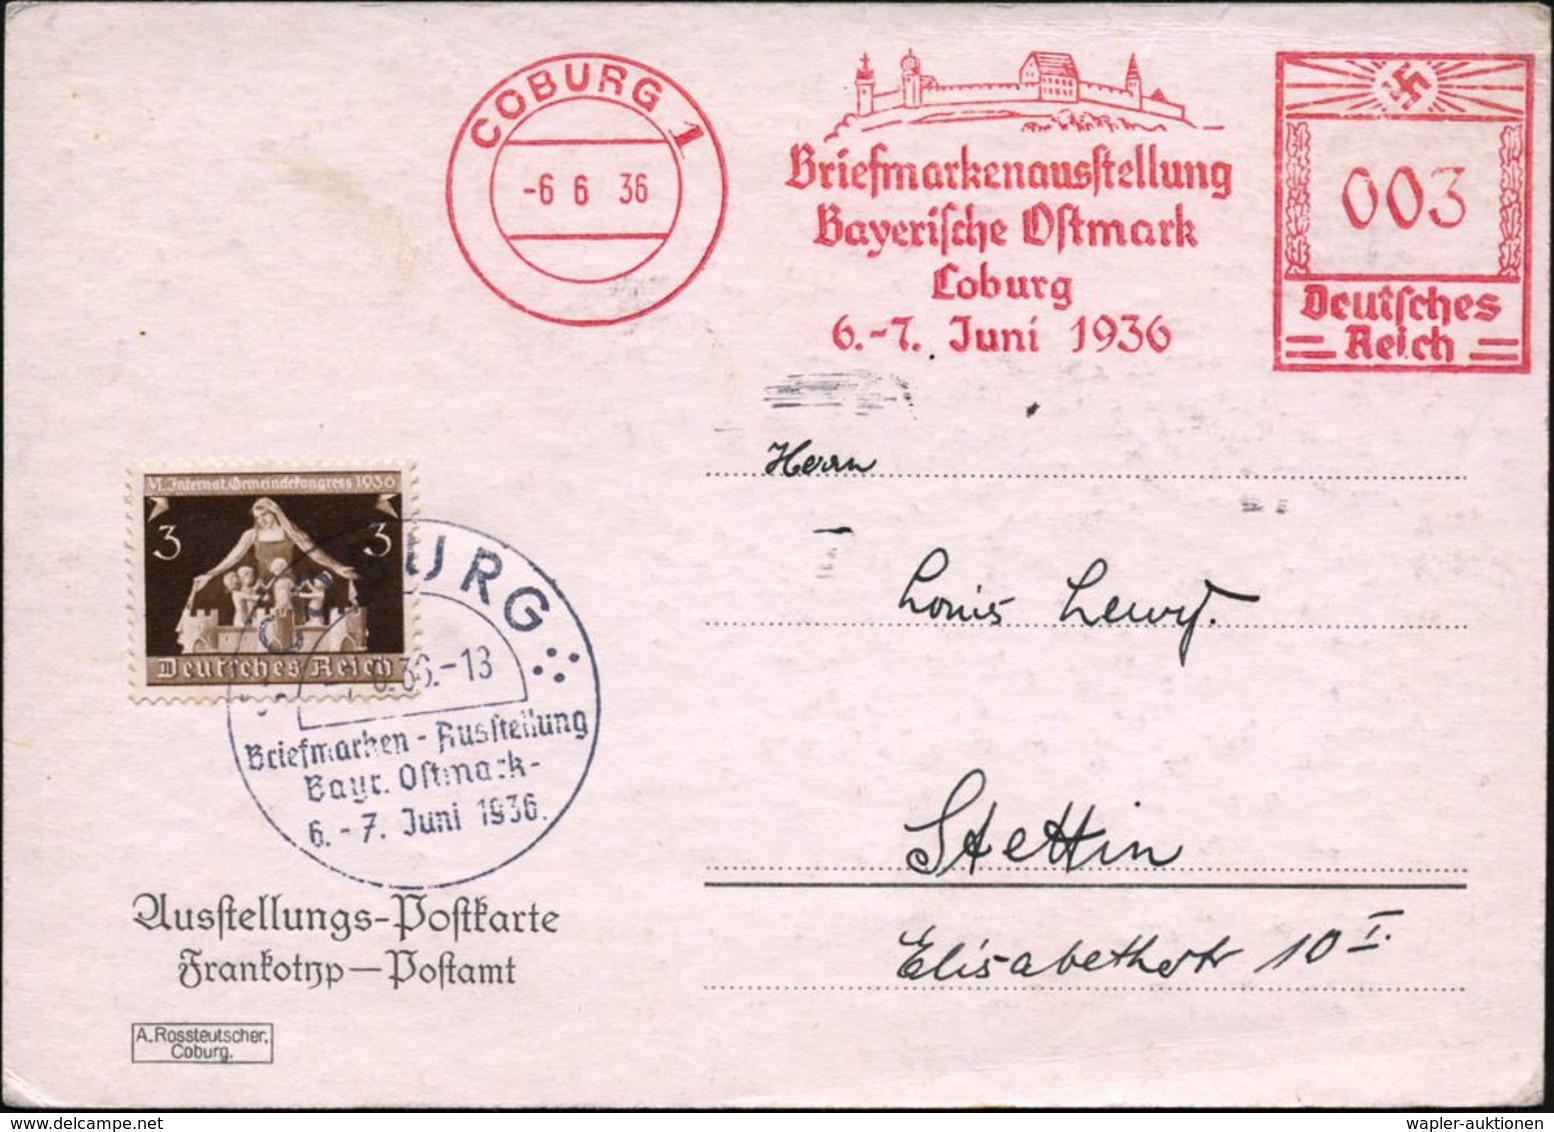 COBURG 1/ Briefmarkenausst./ Bayer.Ostmark/ ..6.-7.Juni 1936 (6.6.) AFS 003 Pf. = Veste Coburg, Lutherstätte + 3 Pf. Zus - Christianisme